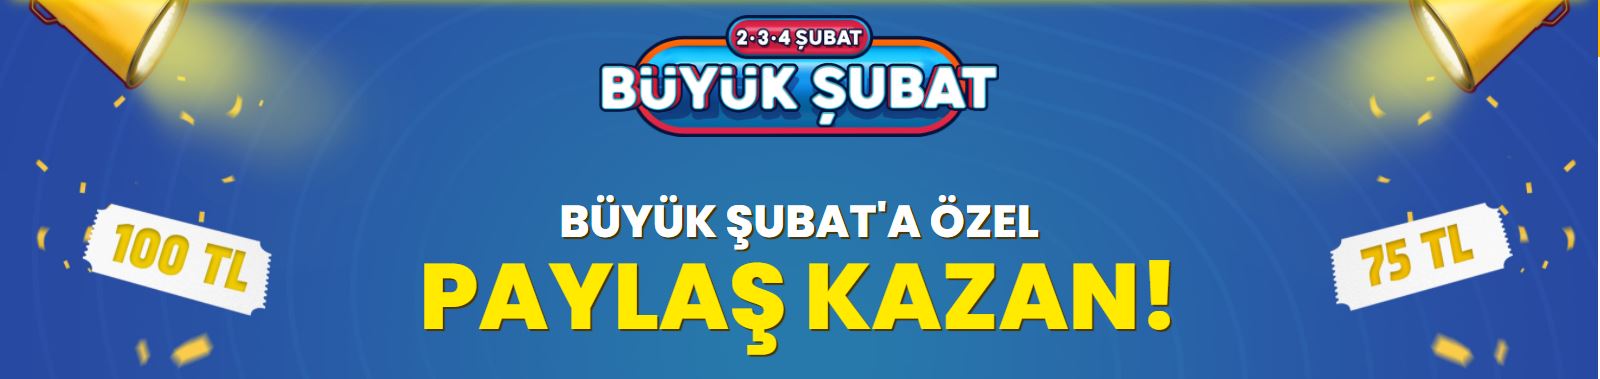 TRENDYOL 2-3-4 ŞUBAT İNDİRİMLERİ / İNDİRİM KUPONLARI ...